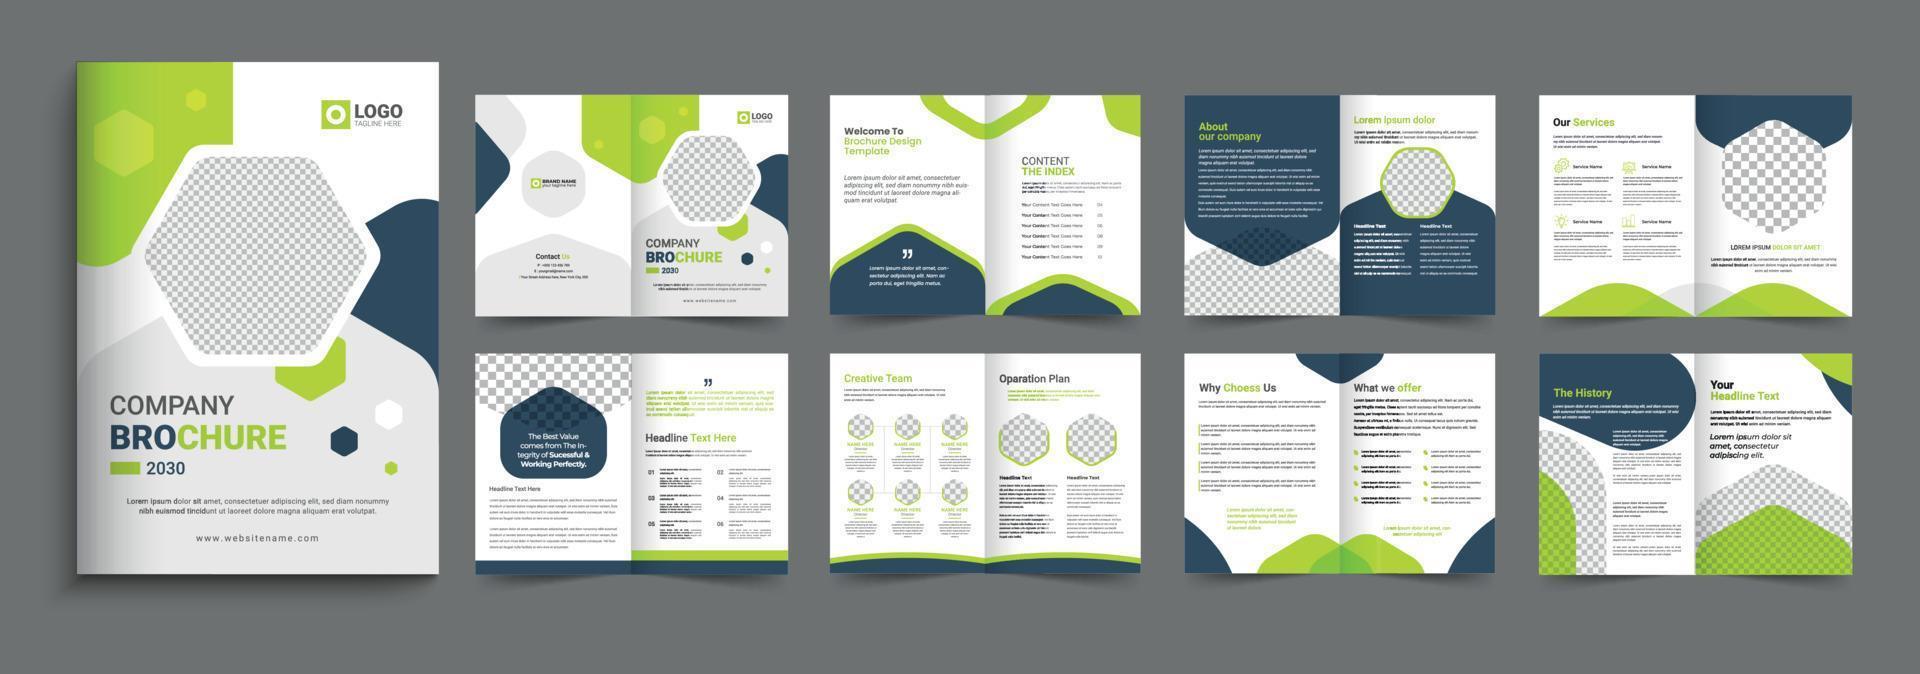 Corporate company profile brochure template design. 16 page corporate brochure editable template layout, minimal business brochure template design vector